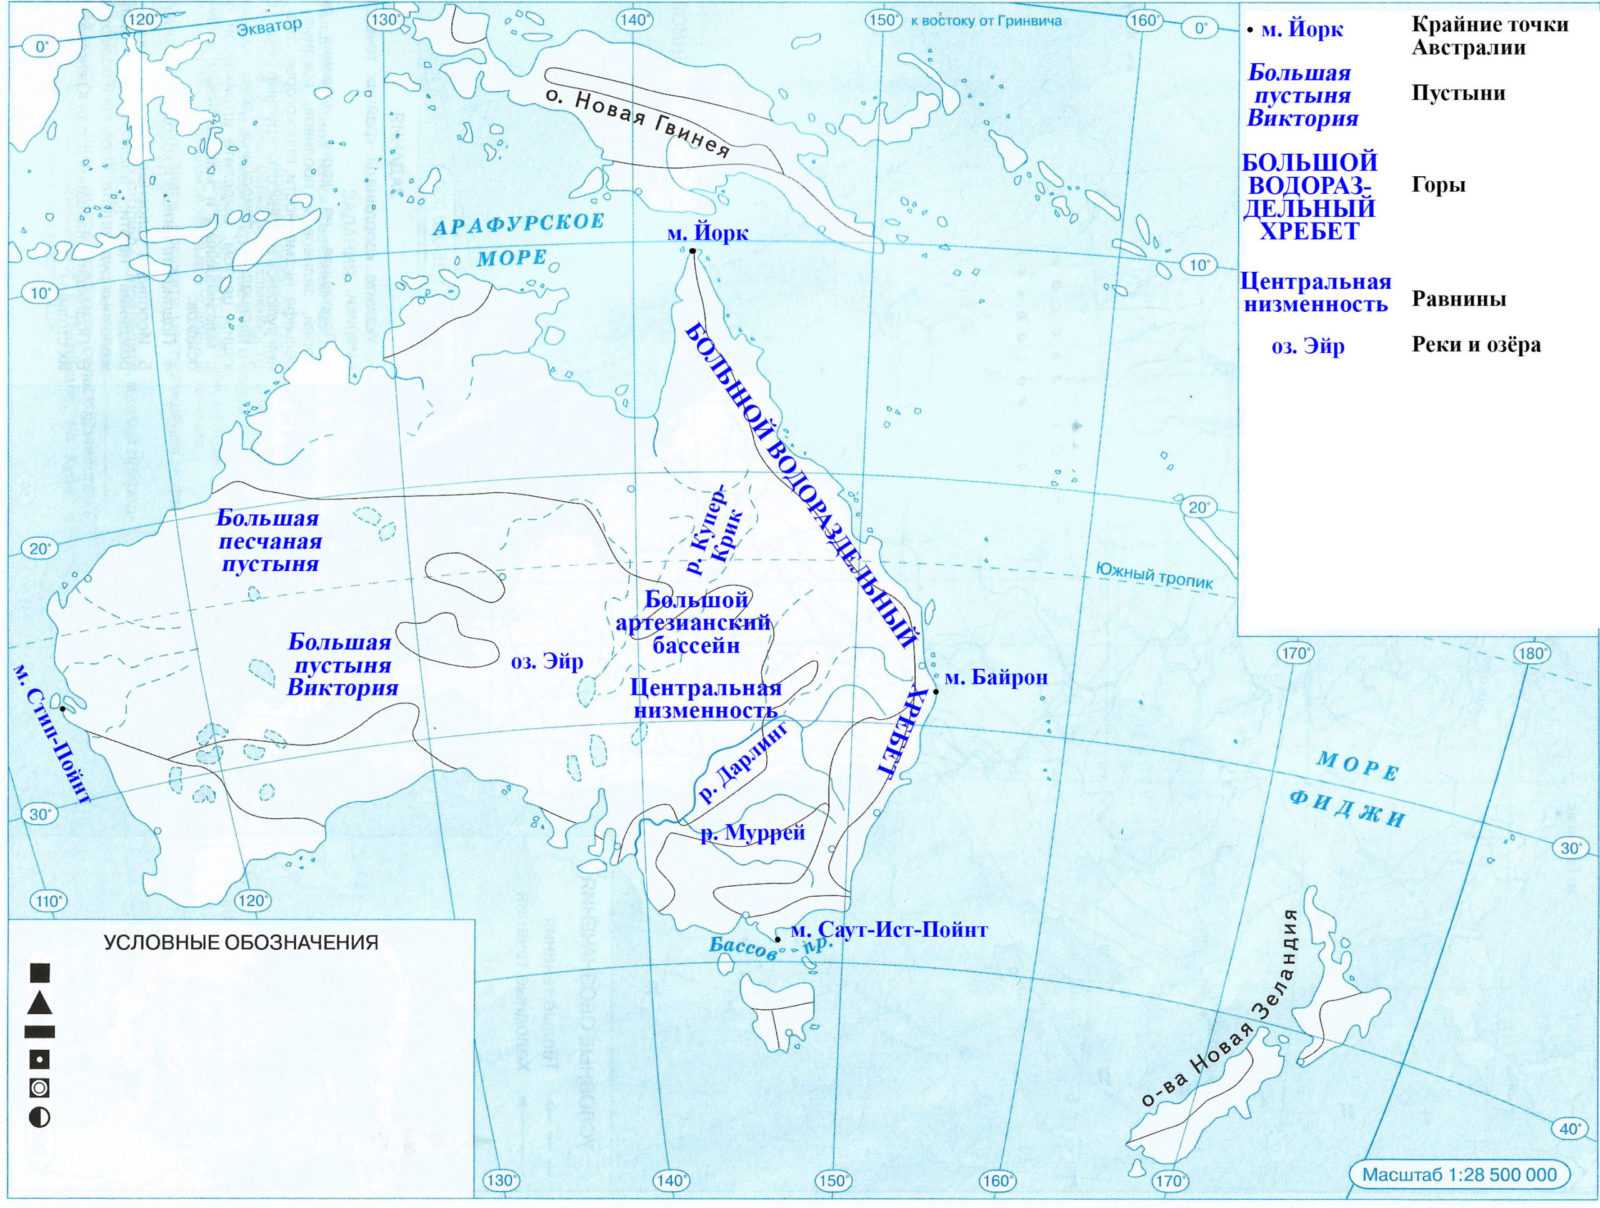 Заливы атлантического океана: особенности, перечень основных, важнейшие проливы